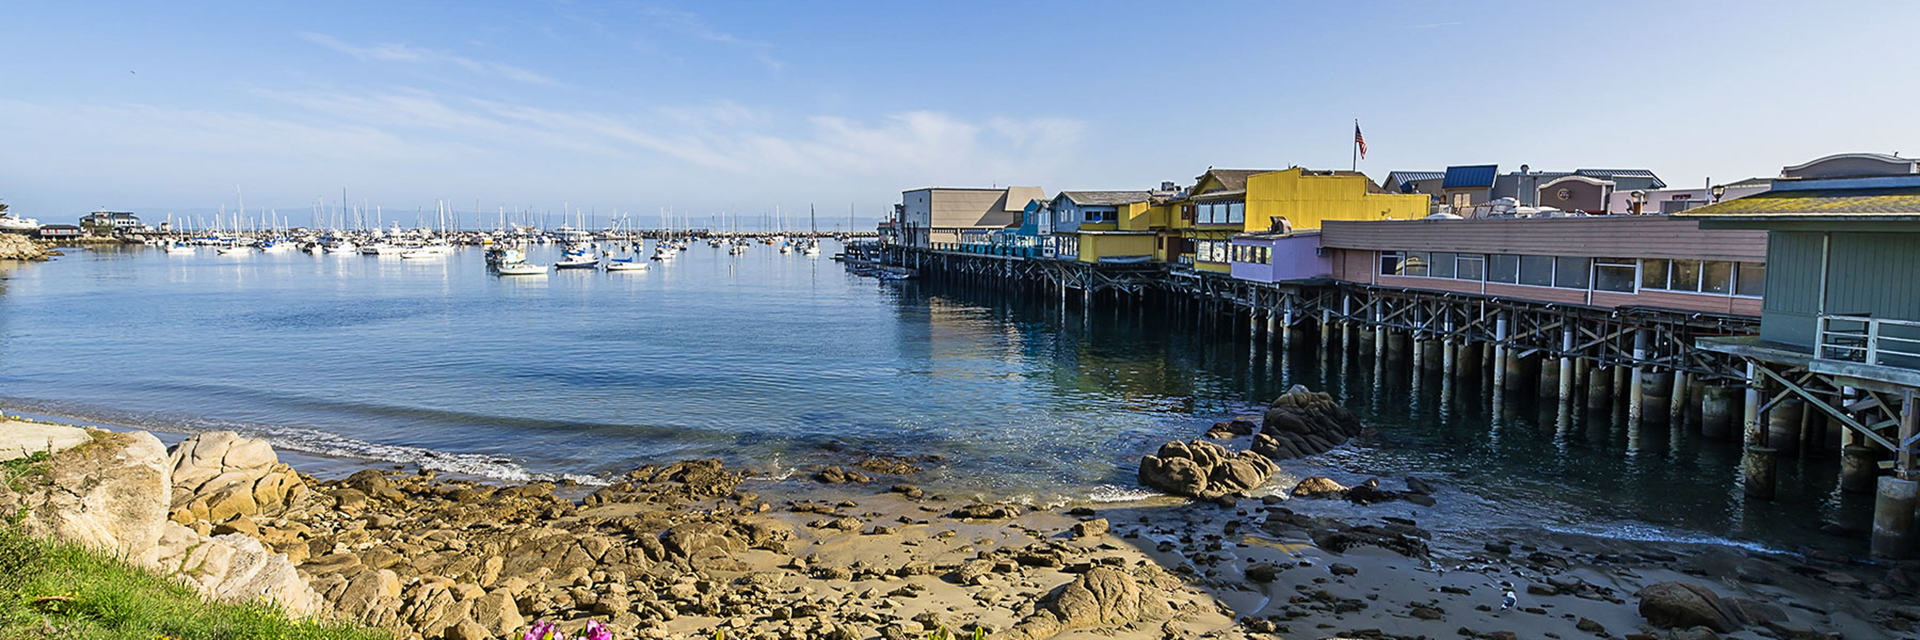 Monterey Activities & Local Guide